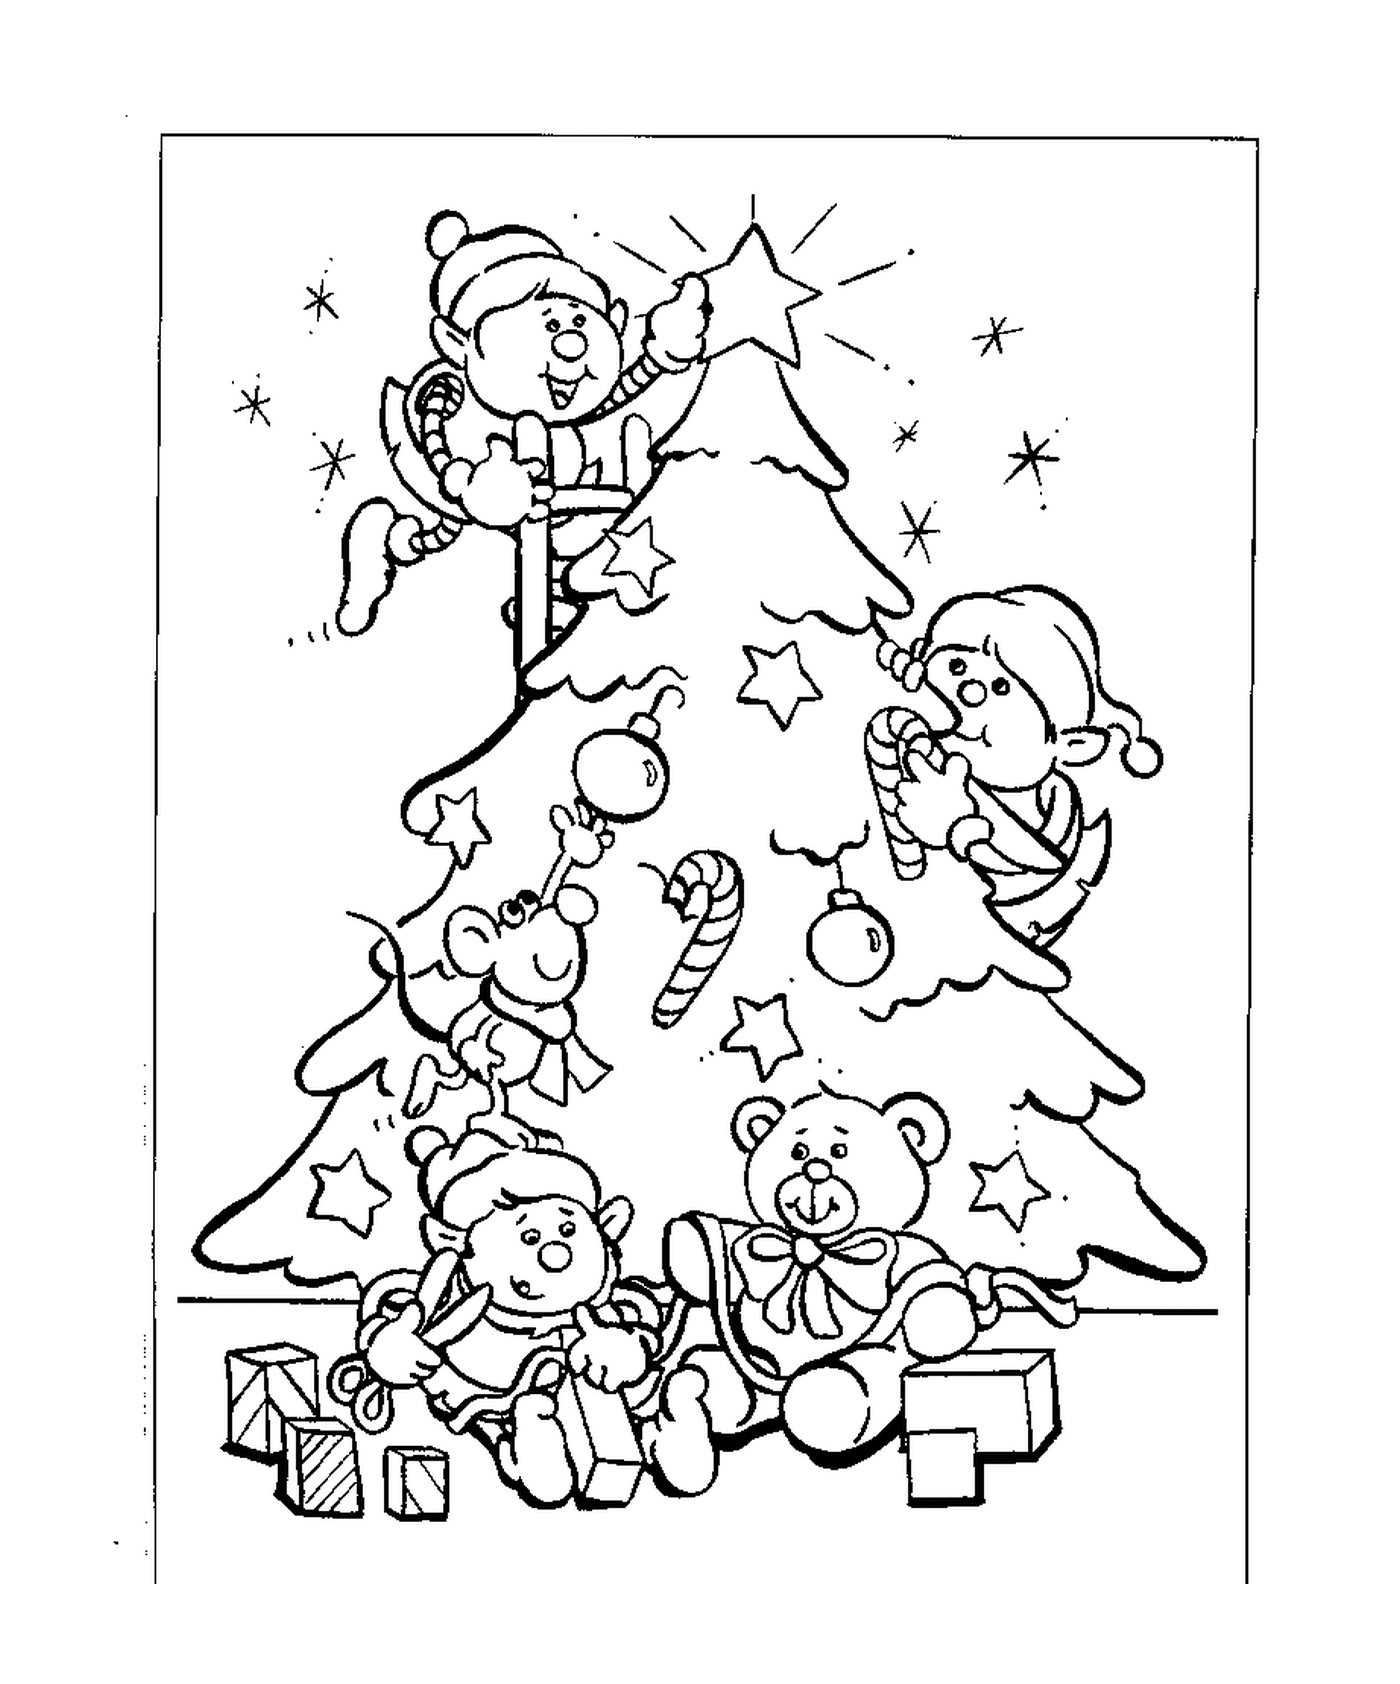  经典圣诞树 